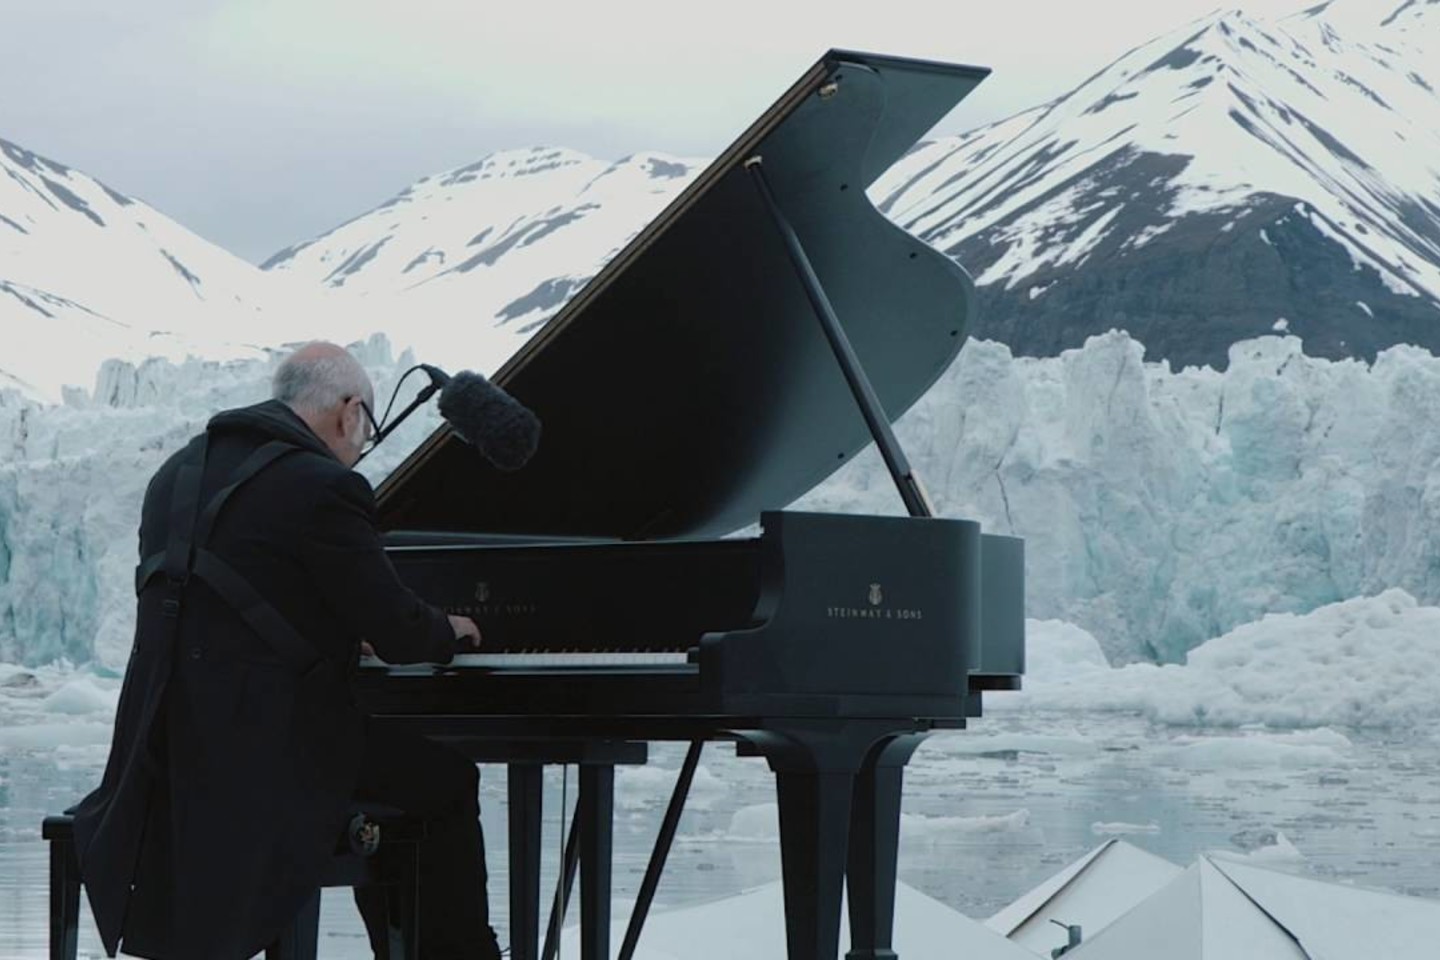 Pianistas L.Einaudi koncertavo prie Špicbergeno salyno Norvegijos šiaurėje.